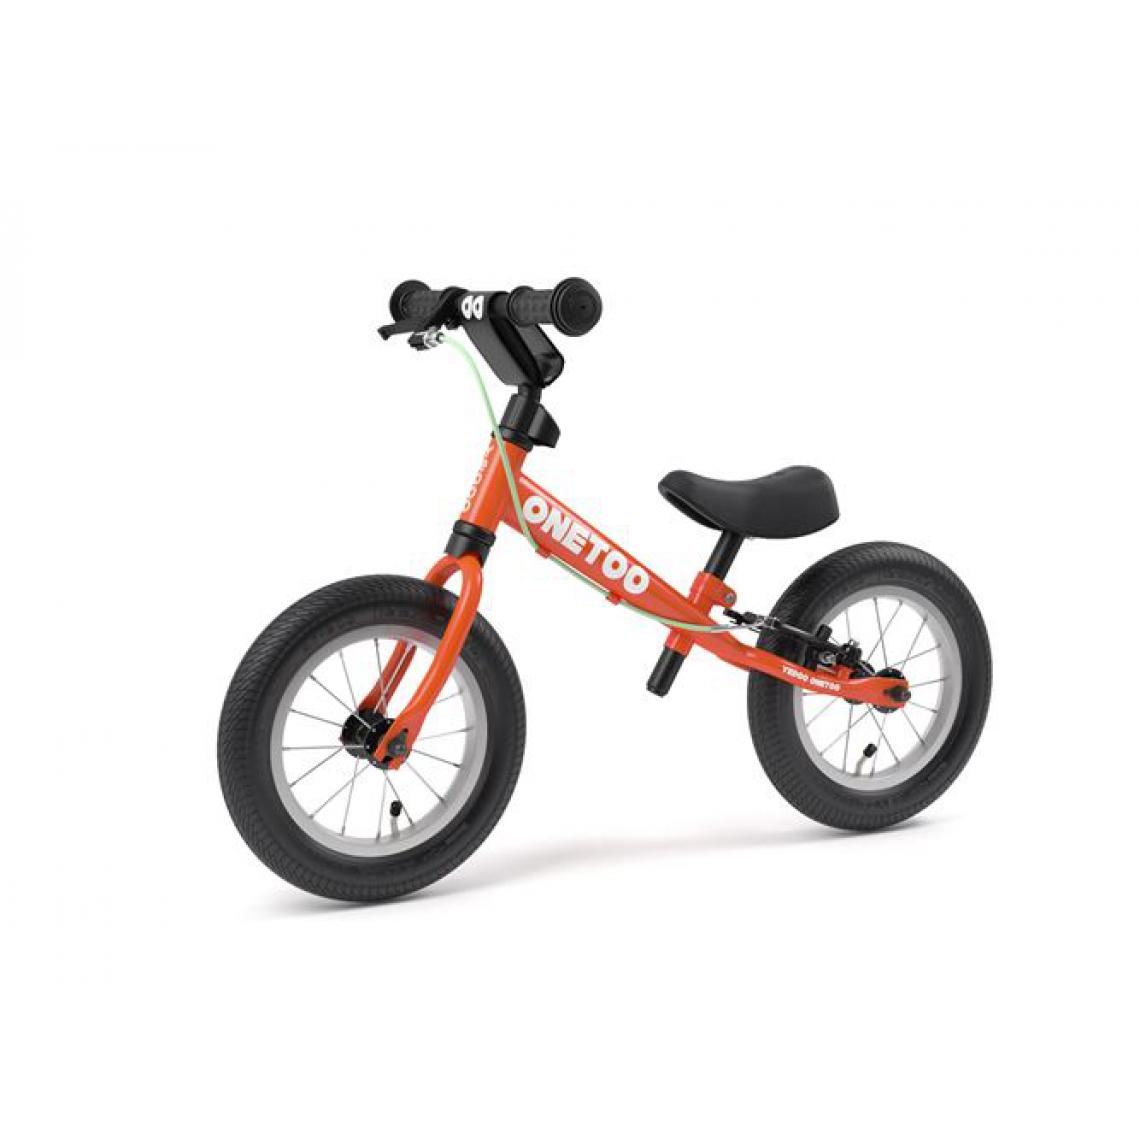 Yedoo - Balancebike Yedoo OneToo redorange - Tricycle